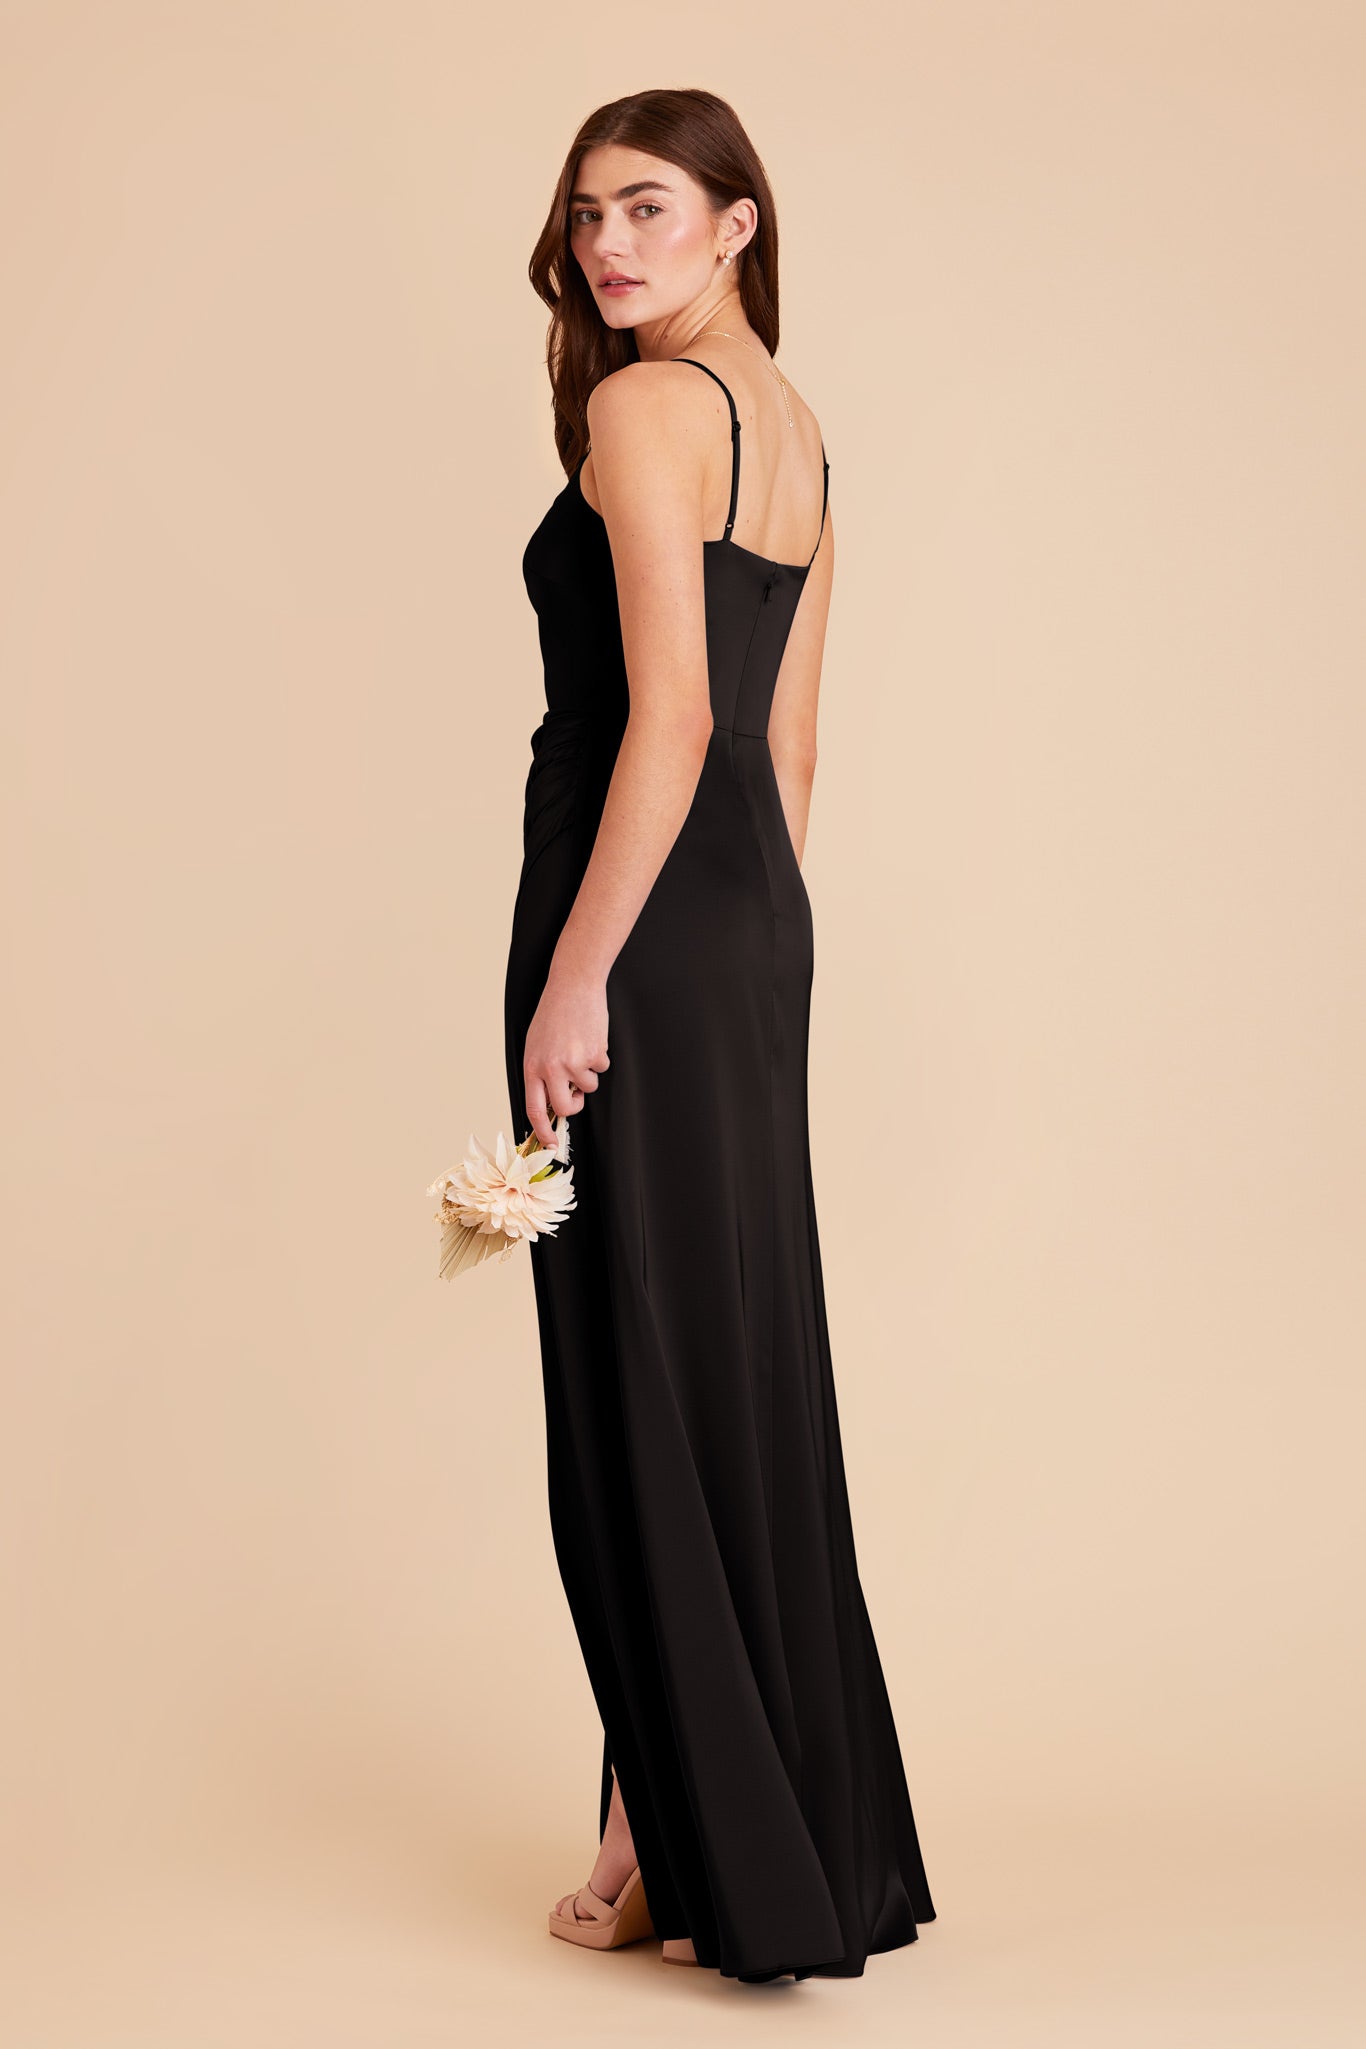 Black Jennifer Matte Satin Dress by Birdy Grey